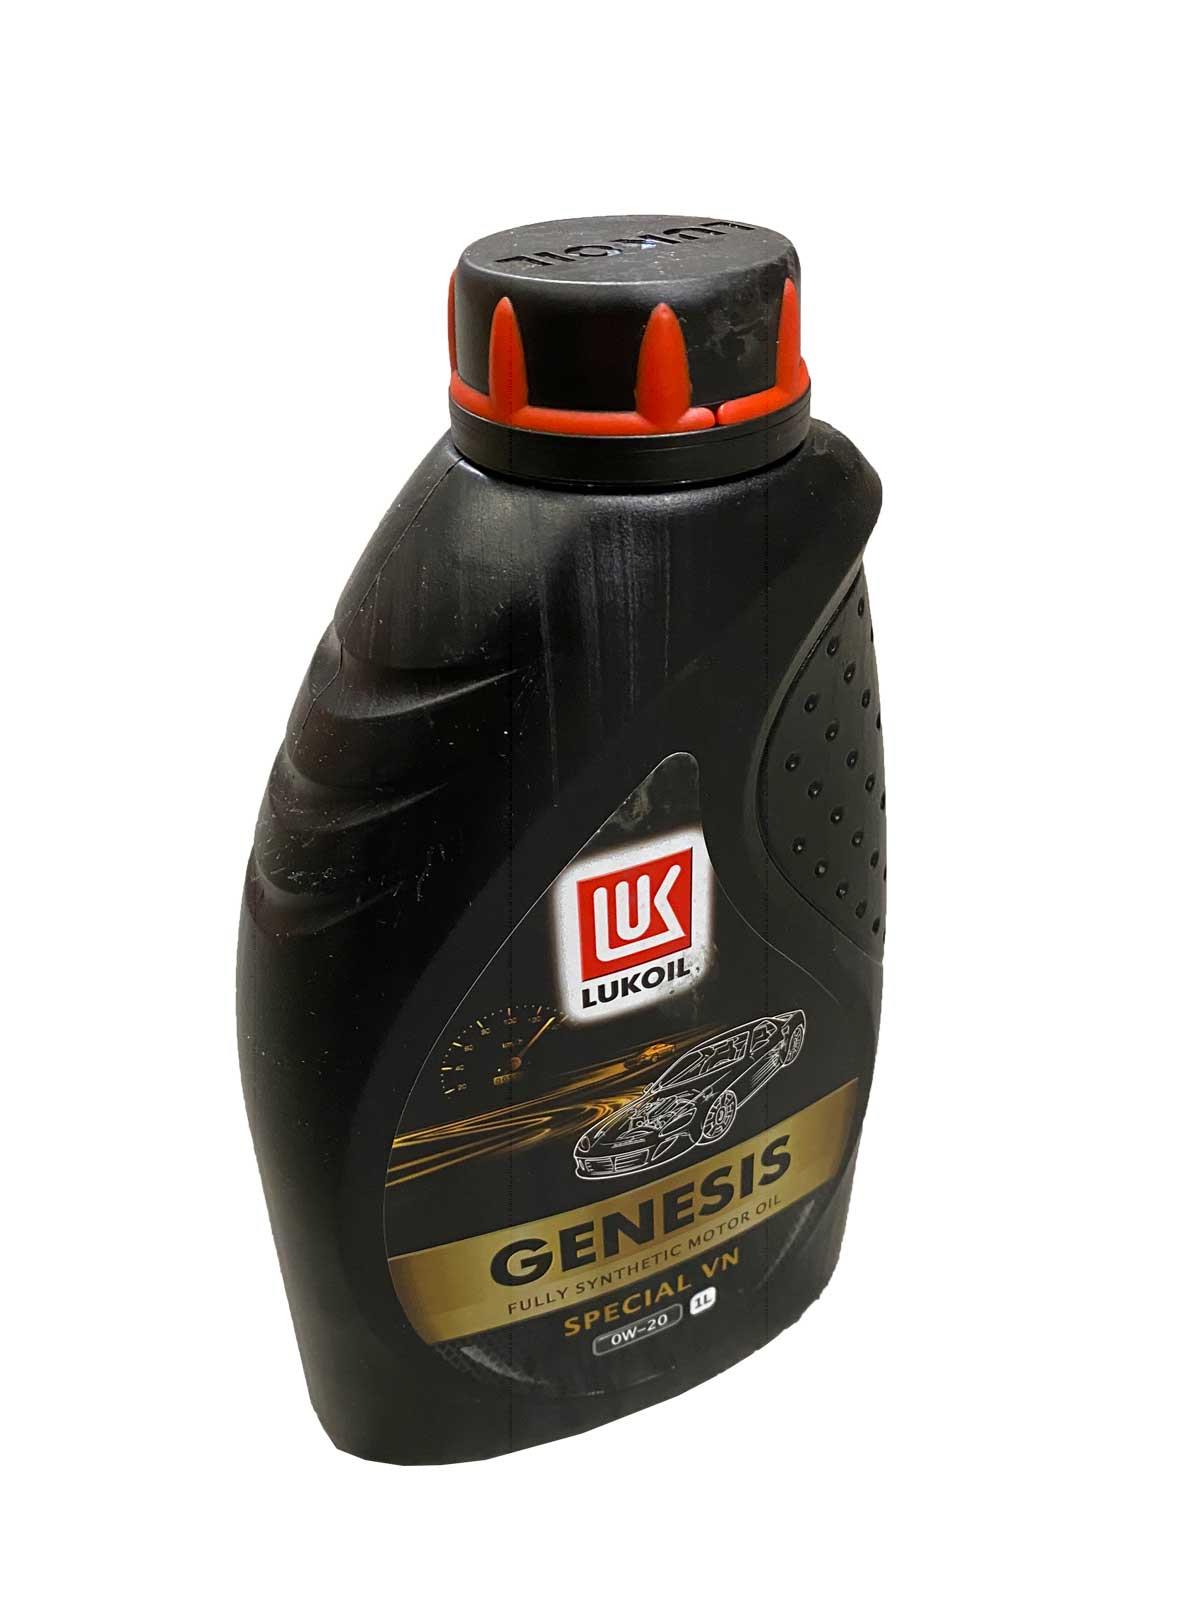 Lukoil Genesis Special VN 0W-20,1L